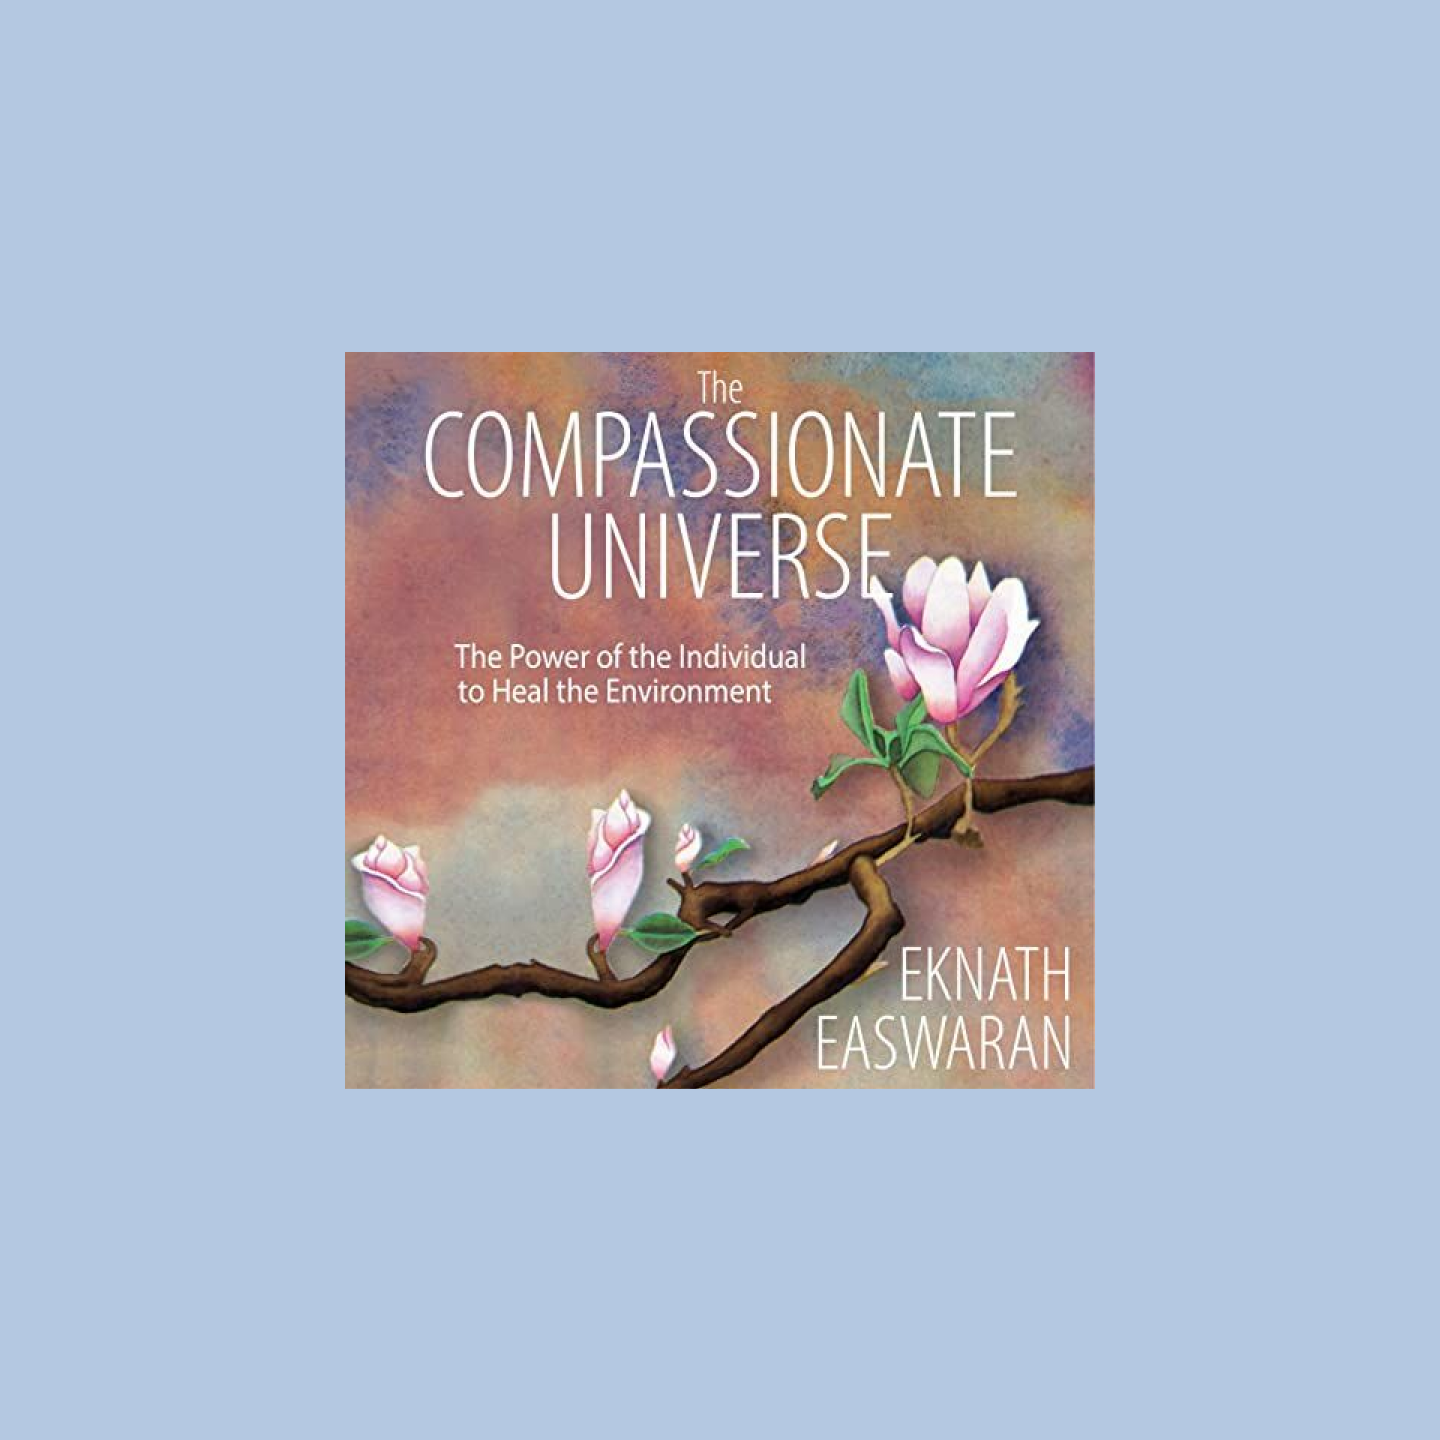 Lydbogens omslag lyder The Compassionate Universe med et kirsebærtræ